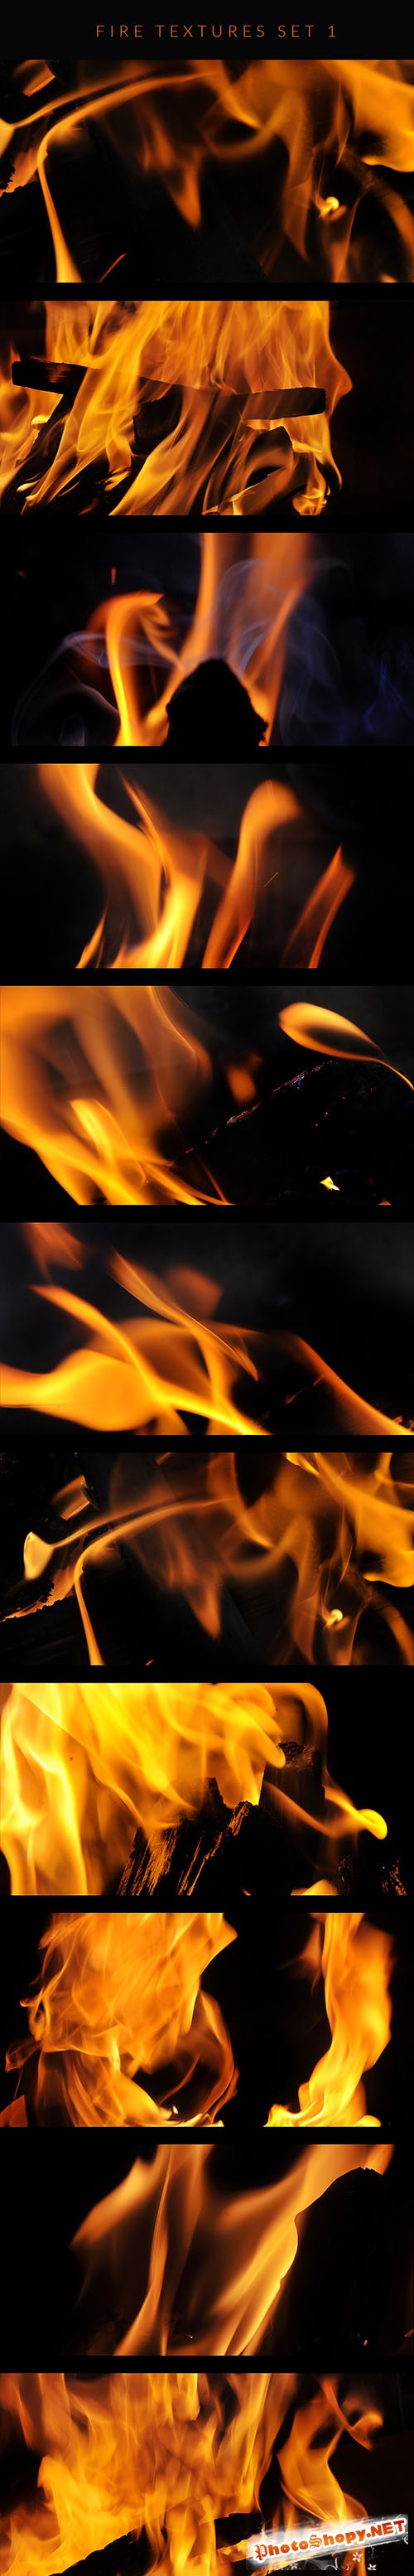 Fire Textures Set 1